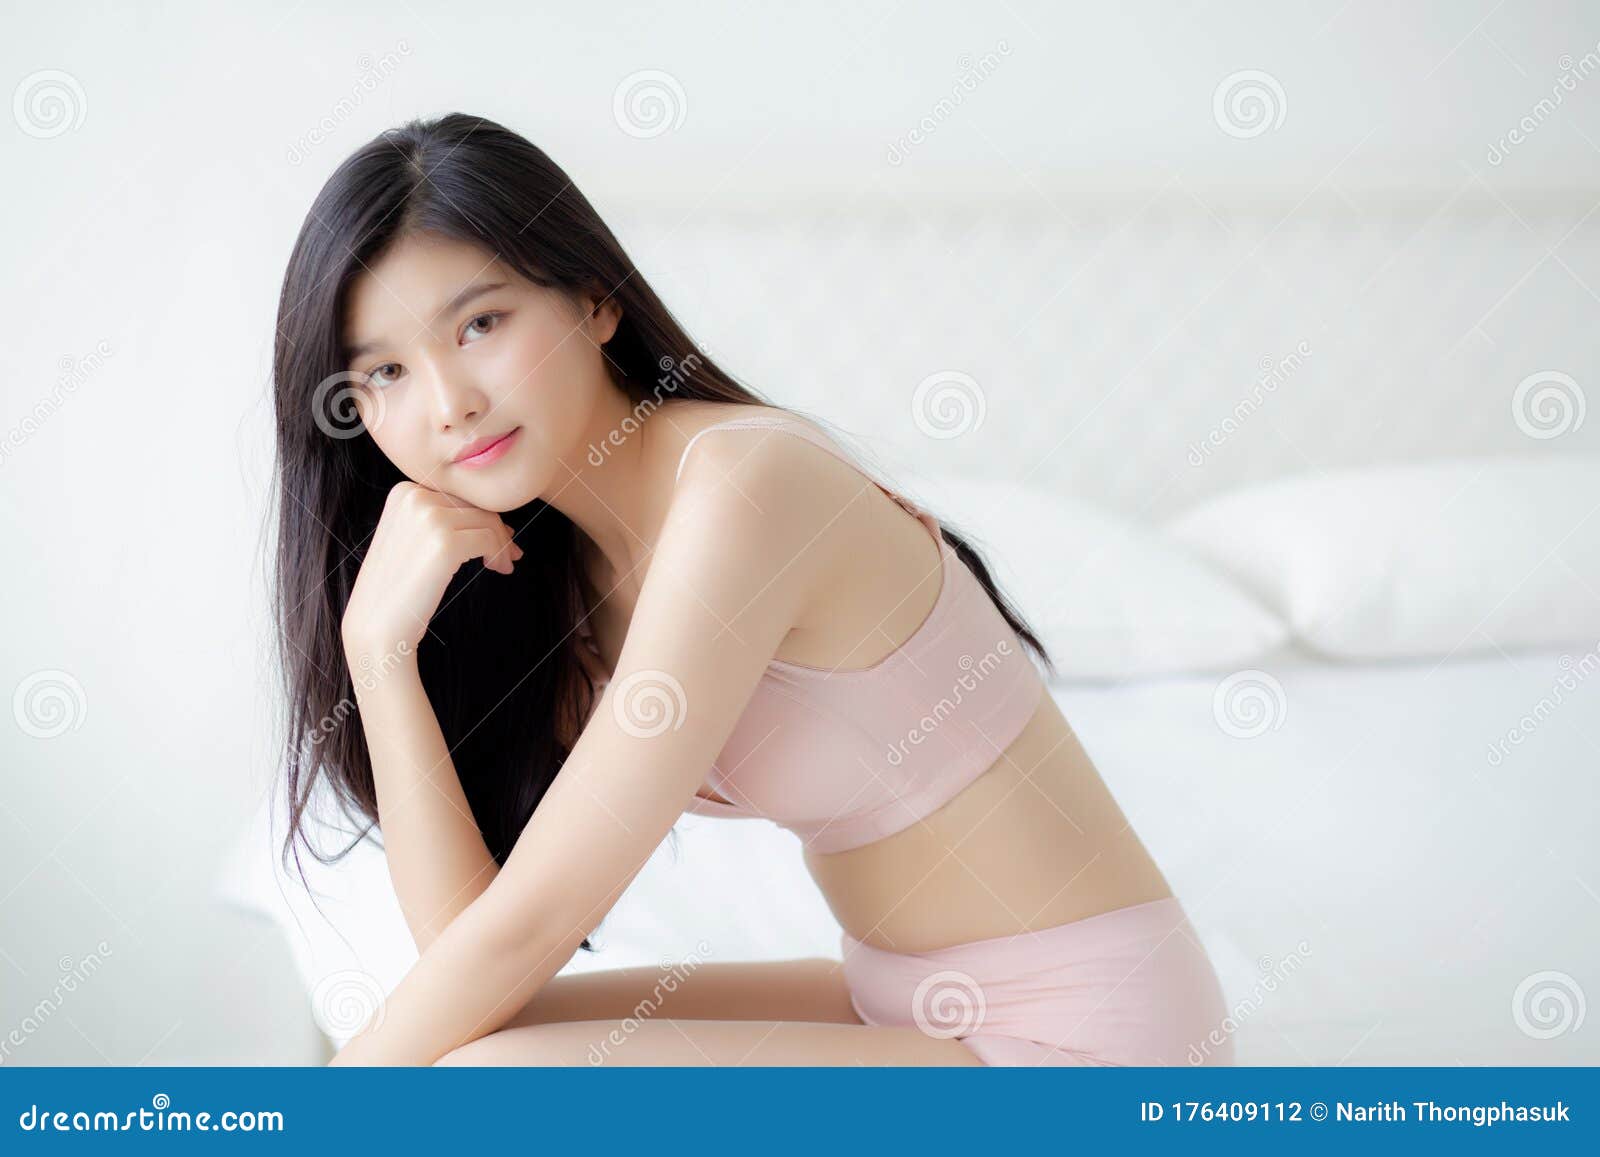 Sexy Asian Underwear